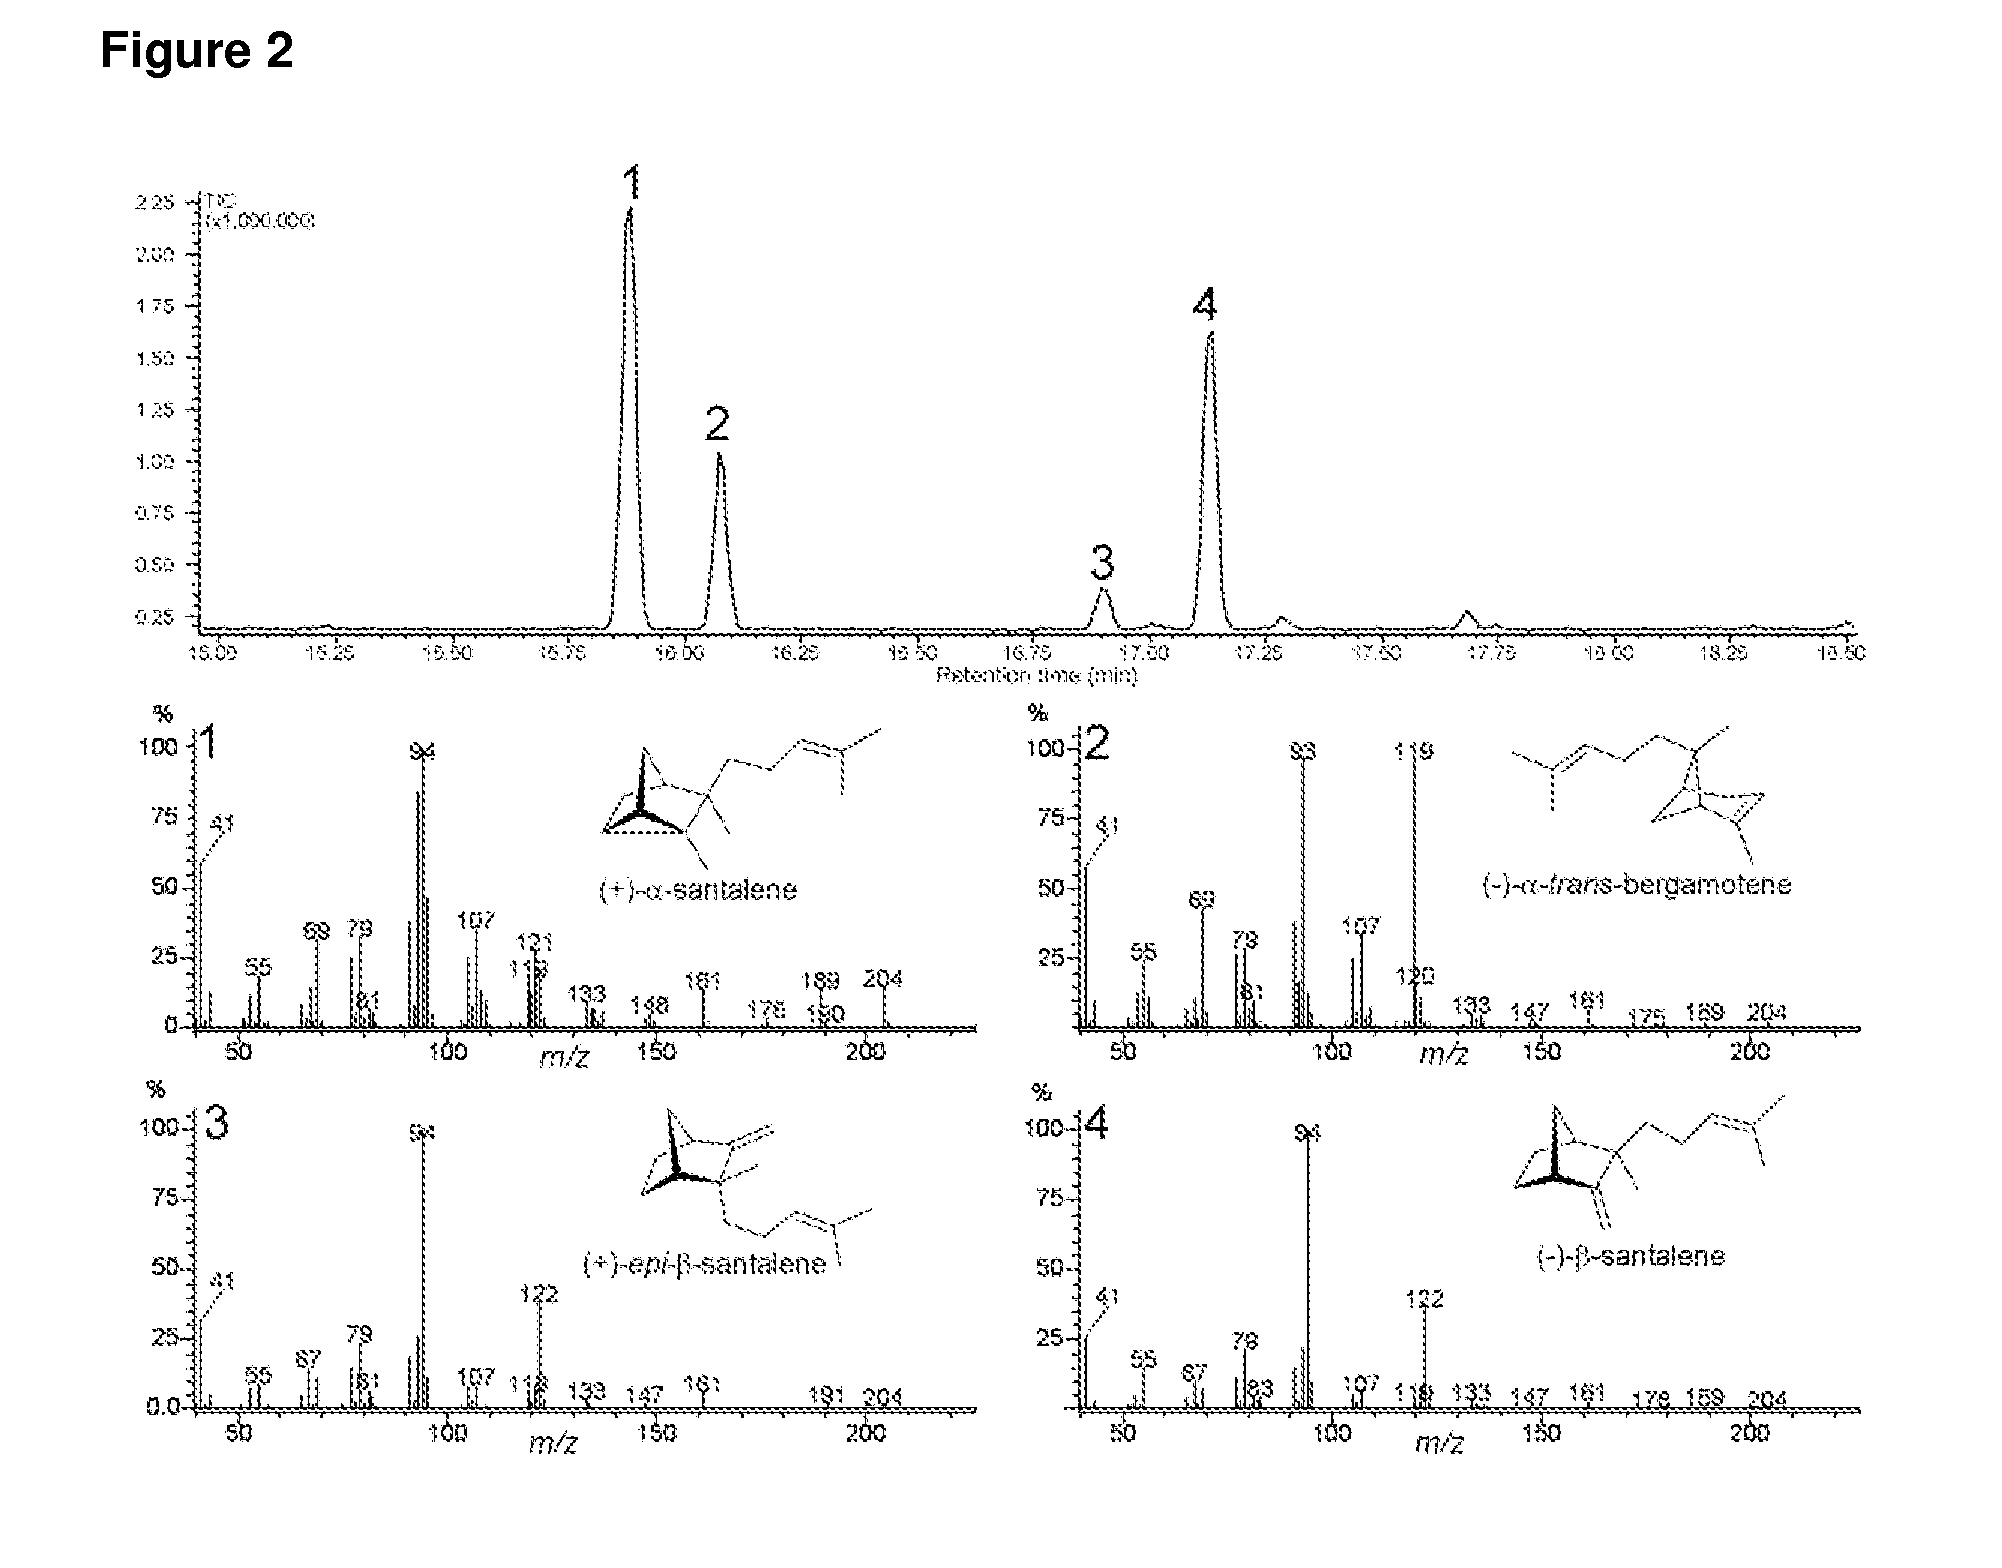 Terpene synthases from santalum